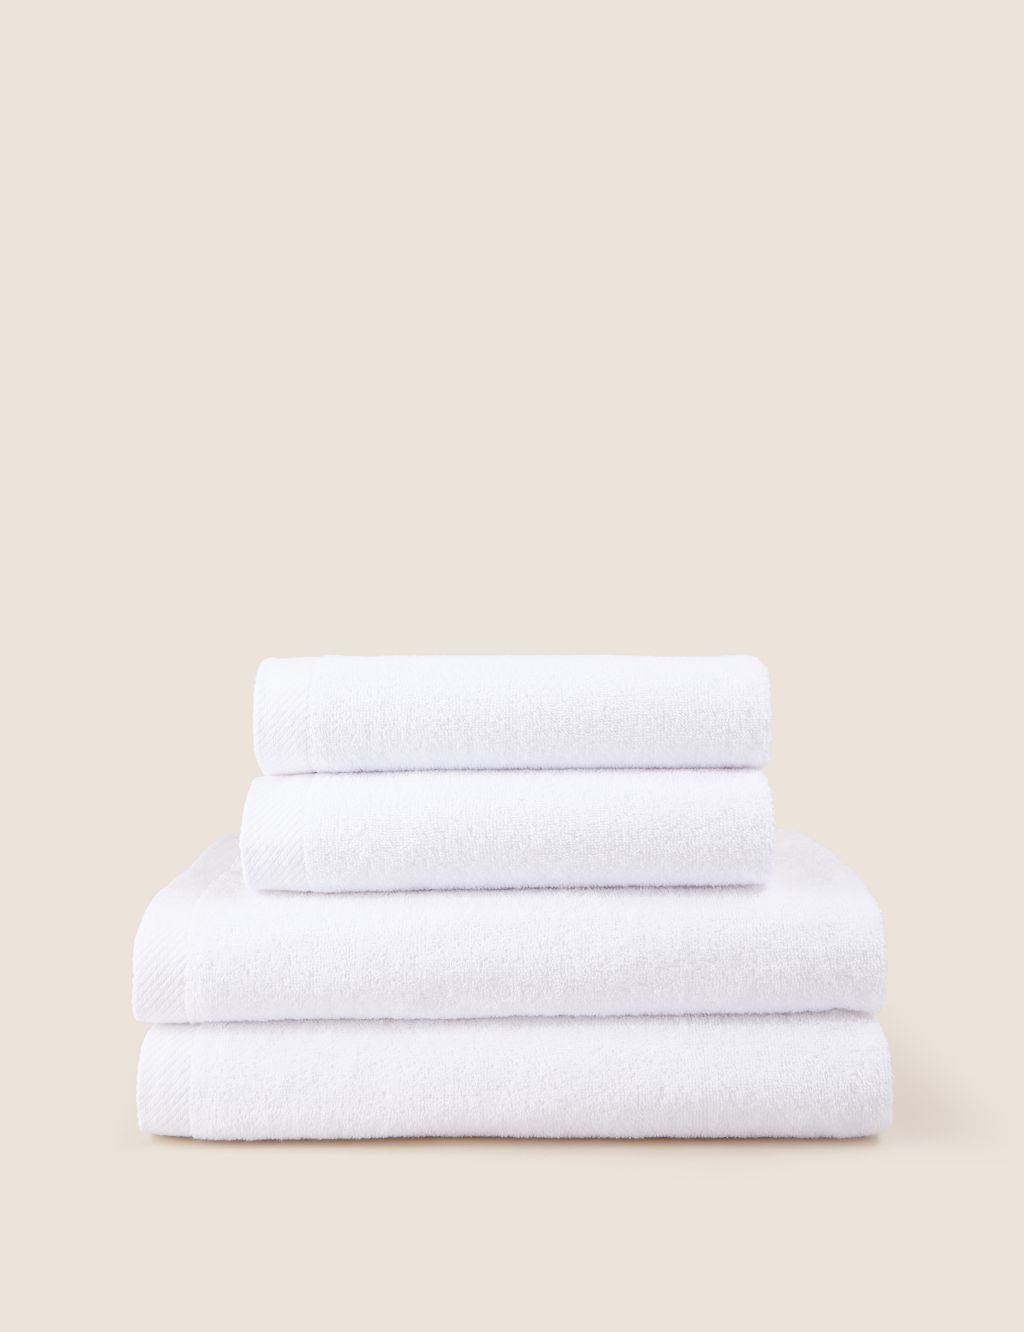 Remarksable Pure Cotton Towel Bundle image 1